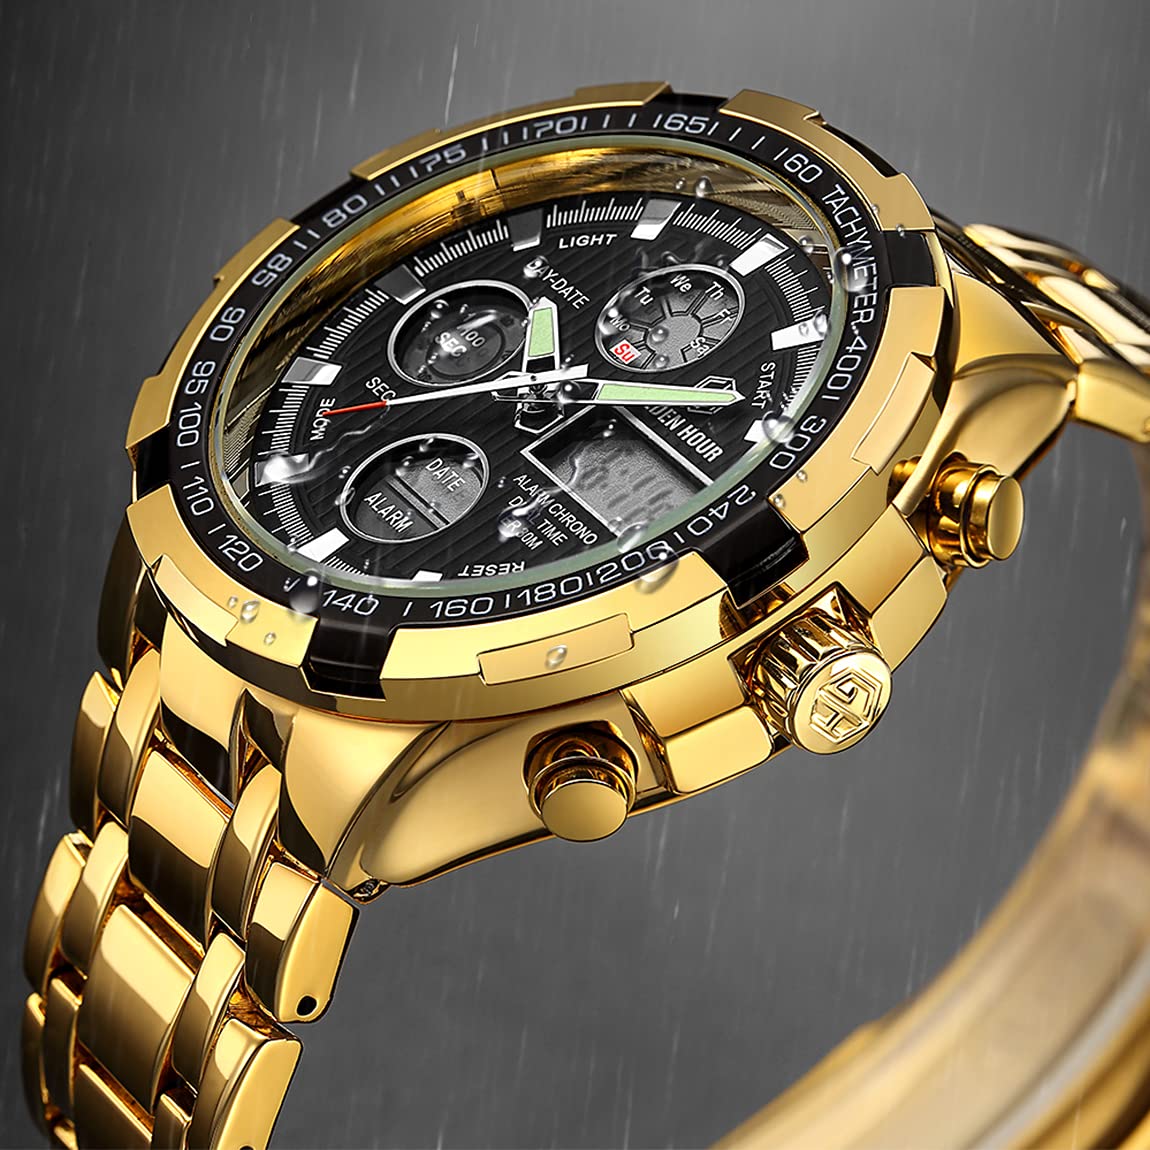 Luxus Mode Herren Uhren Edelstahl Schwer Klobig Sport Chronograph Wasserdicht Gold Zweifarbig Datum Alarm Multifunktions Analoge Digitale Uhr